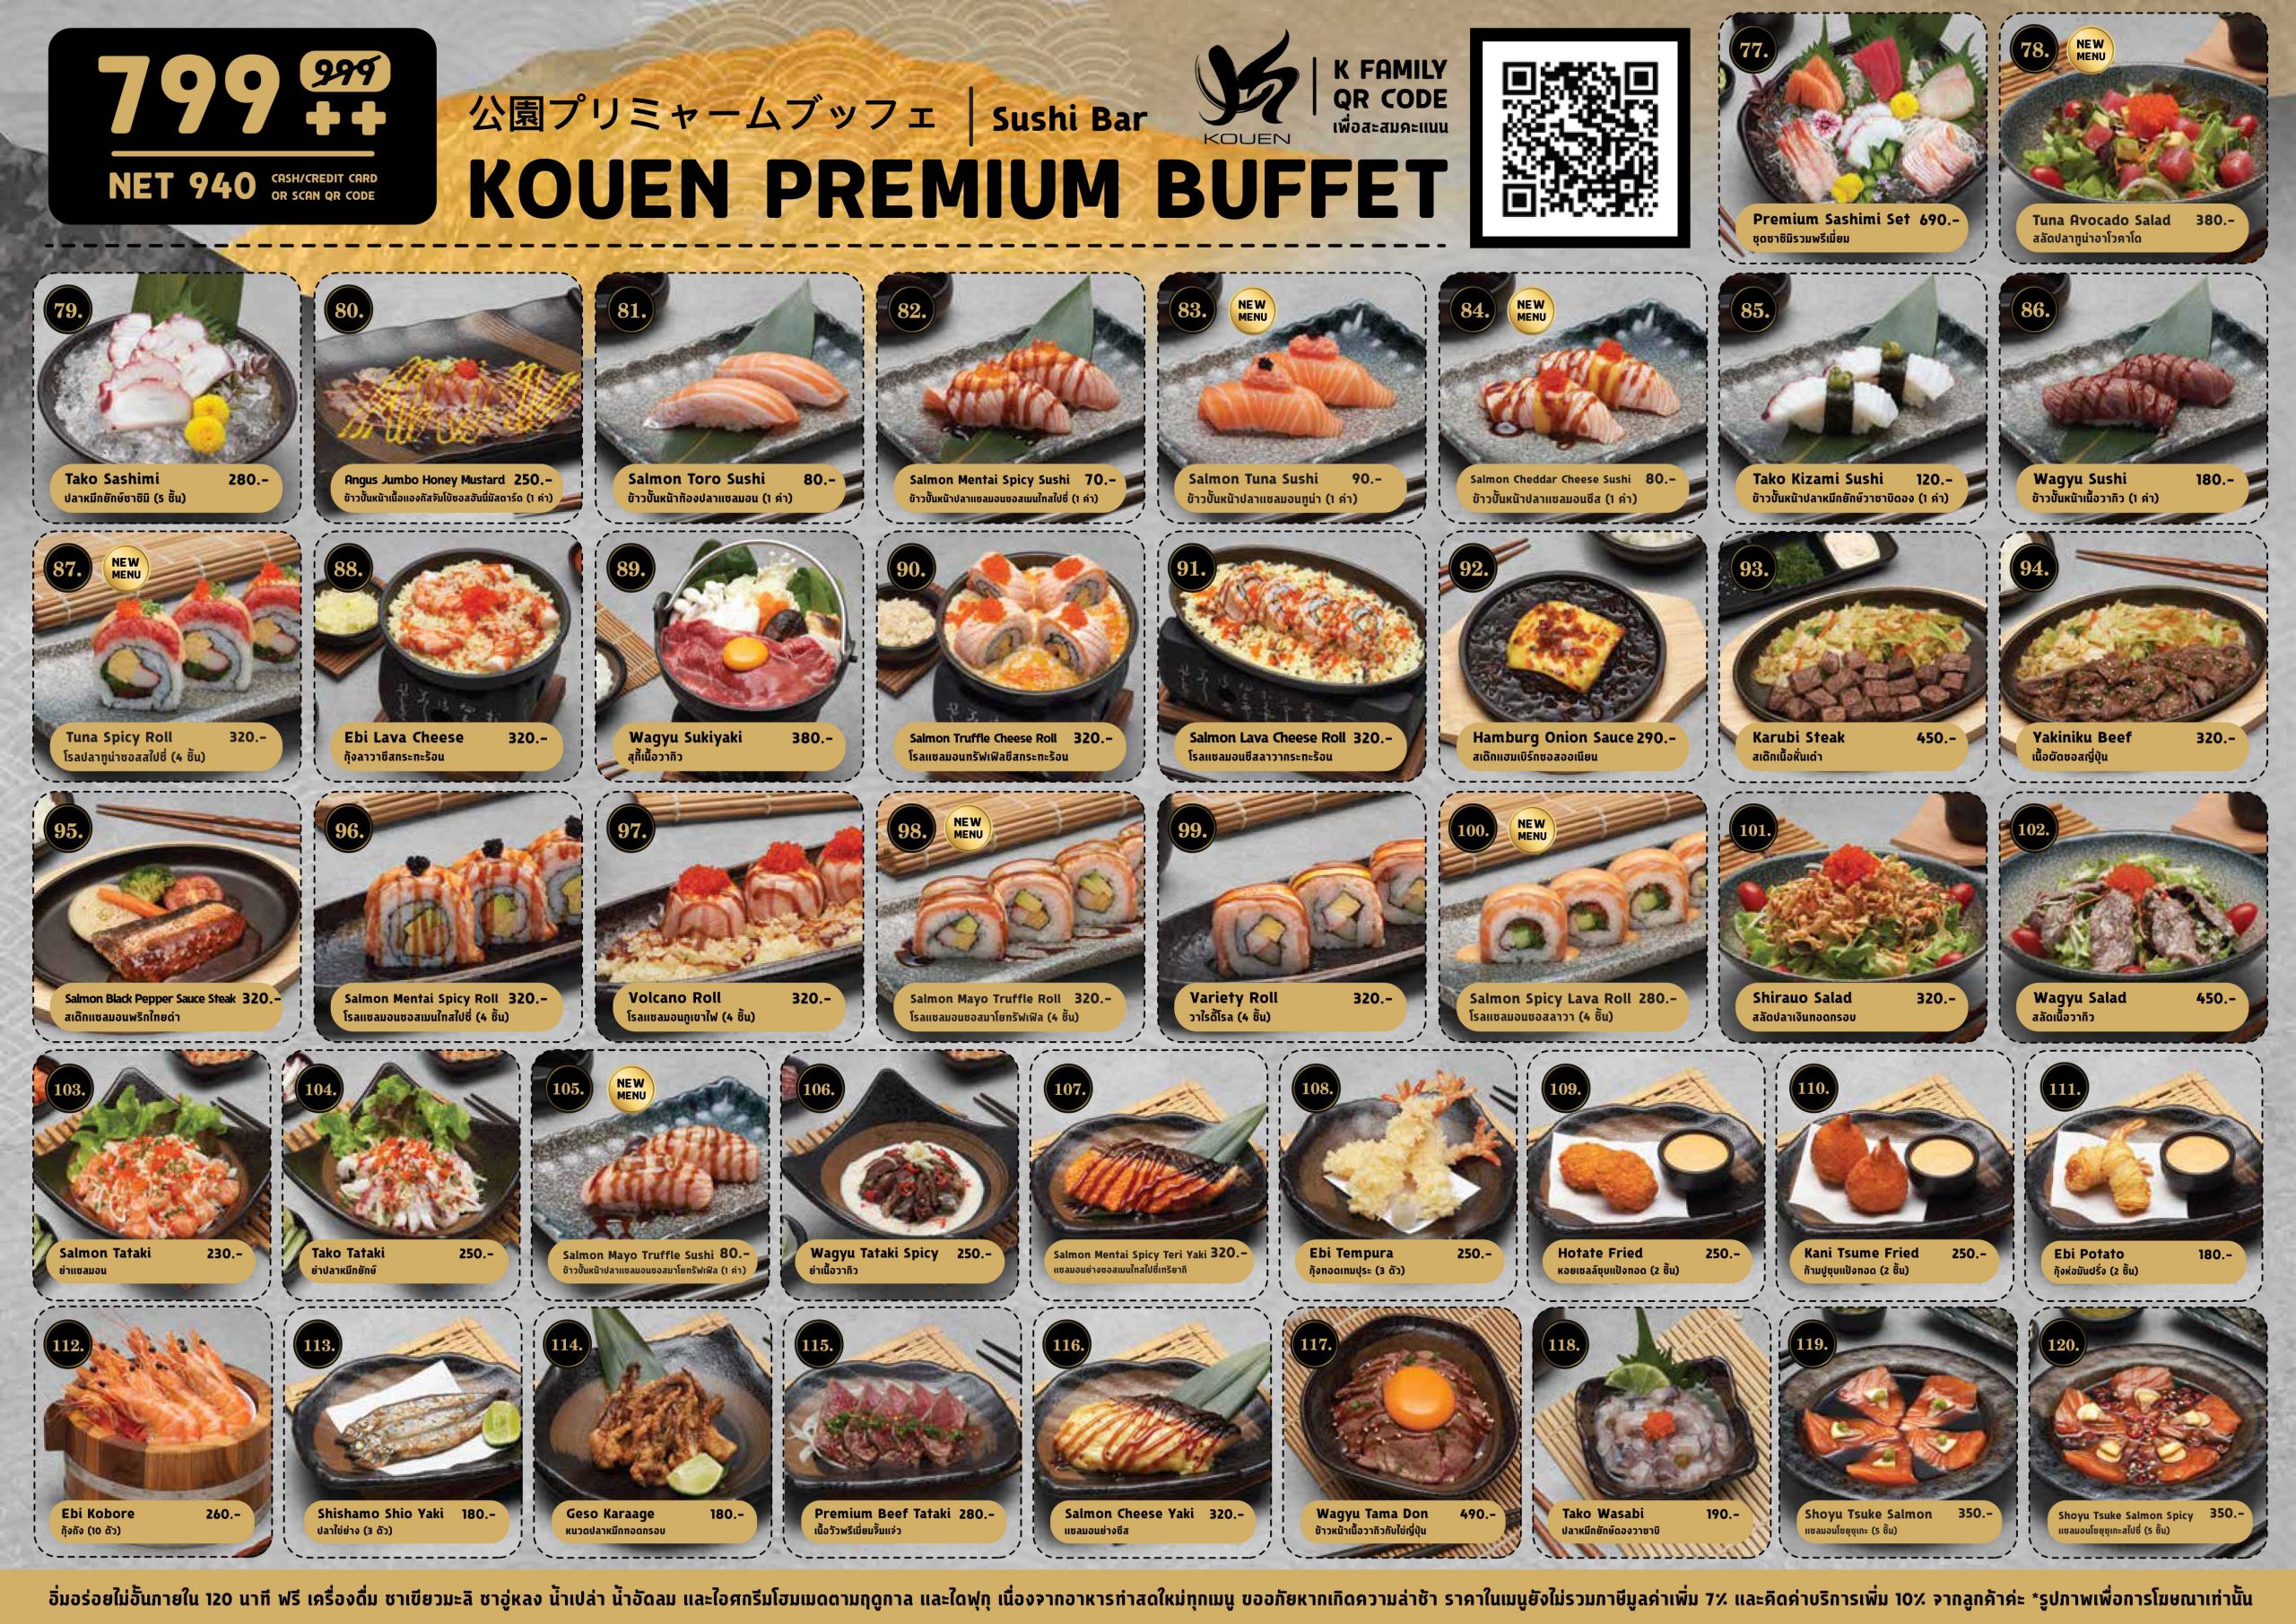 Kouen Premium Buffet 799++ (940 NET.-)